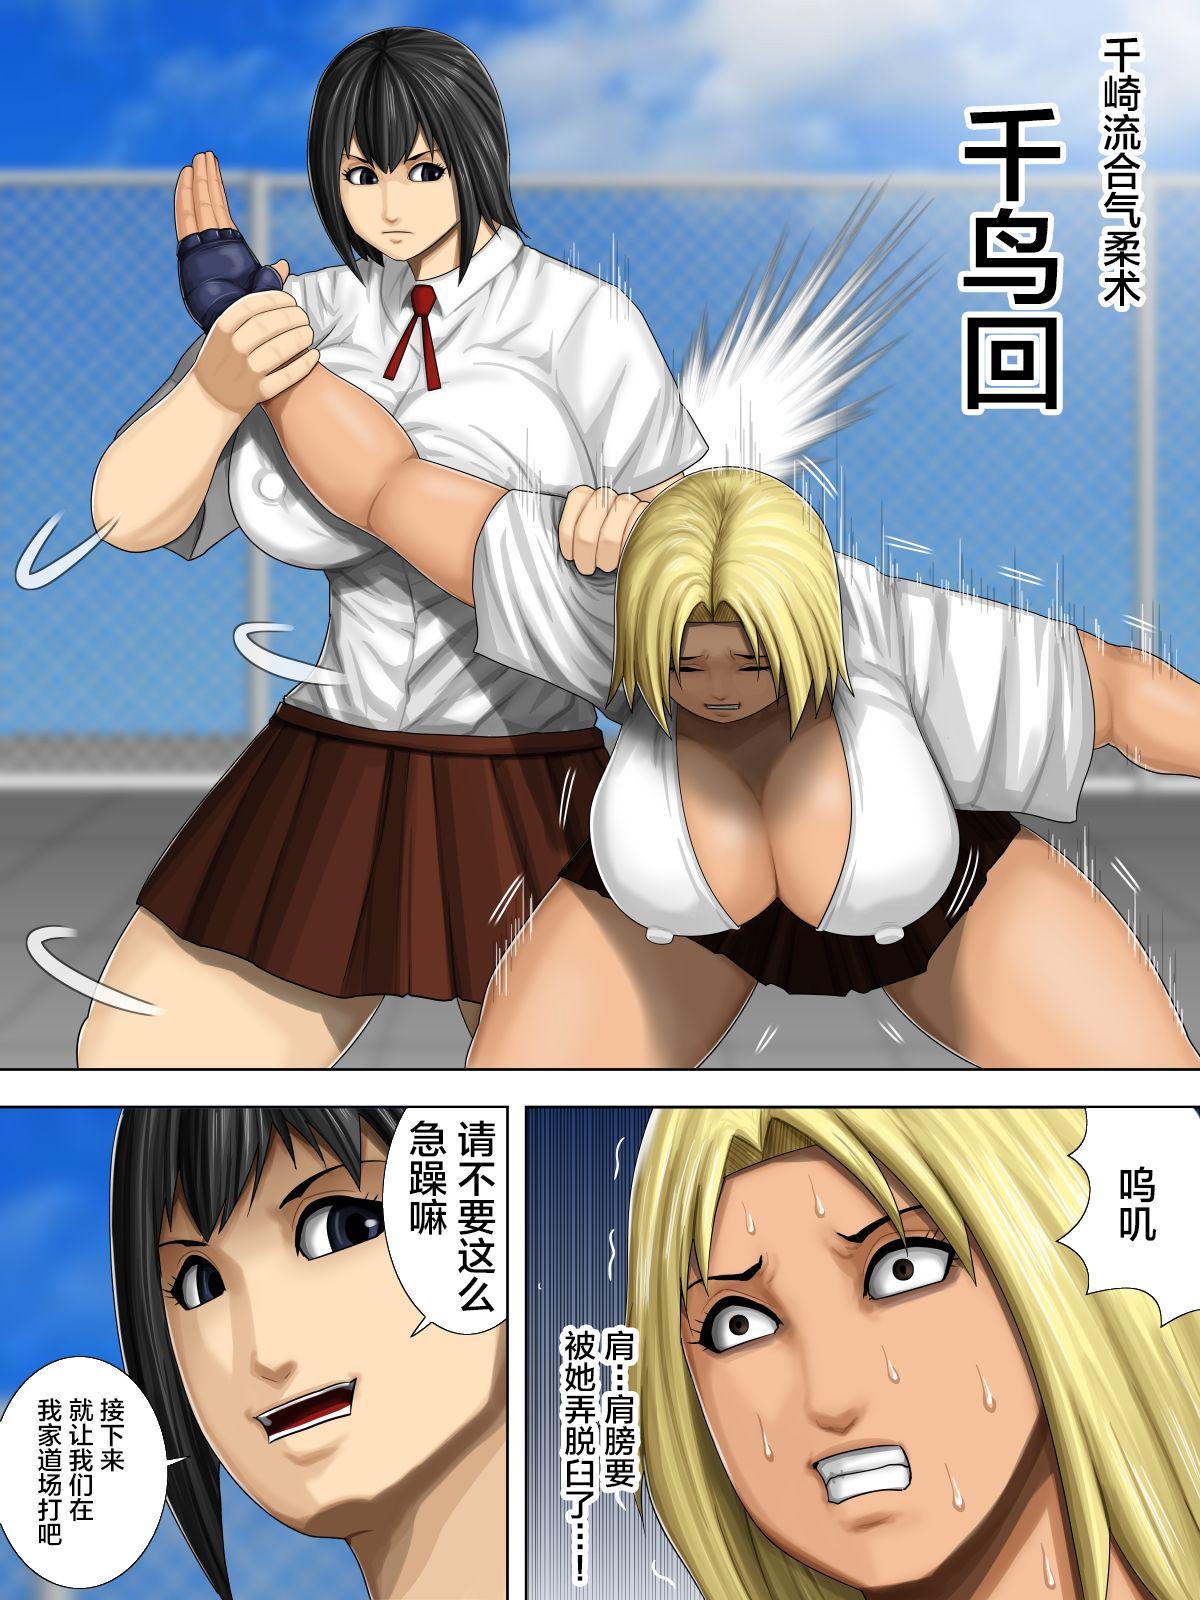 Furyou Musume vs Aiki Jujitsu 6